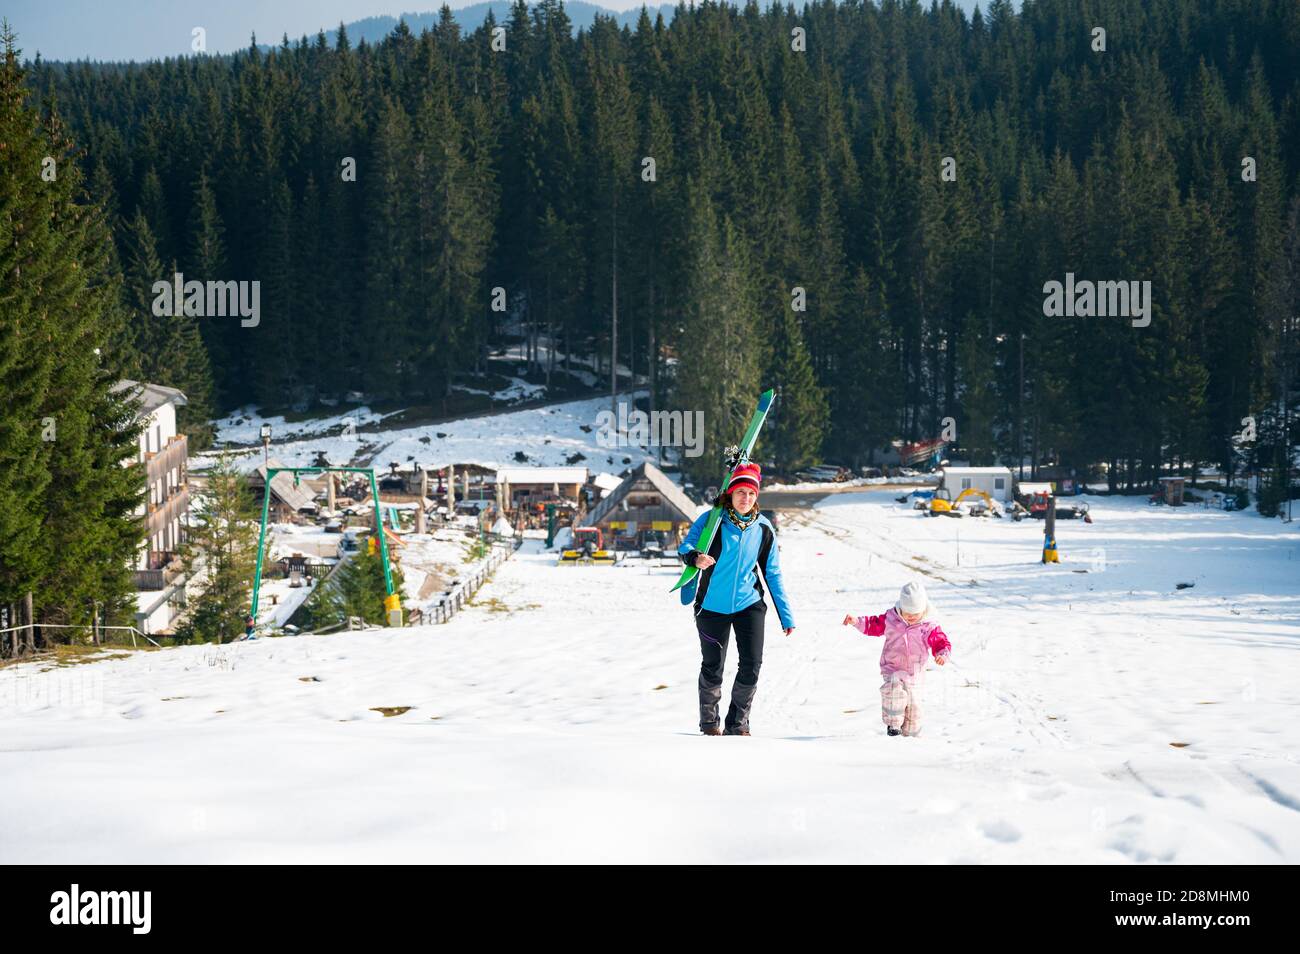 Madre e figlia che saliscono su una pista da sci. Foto Stock